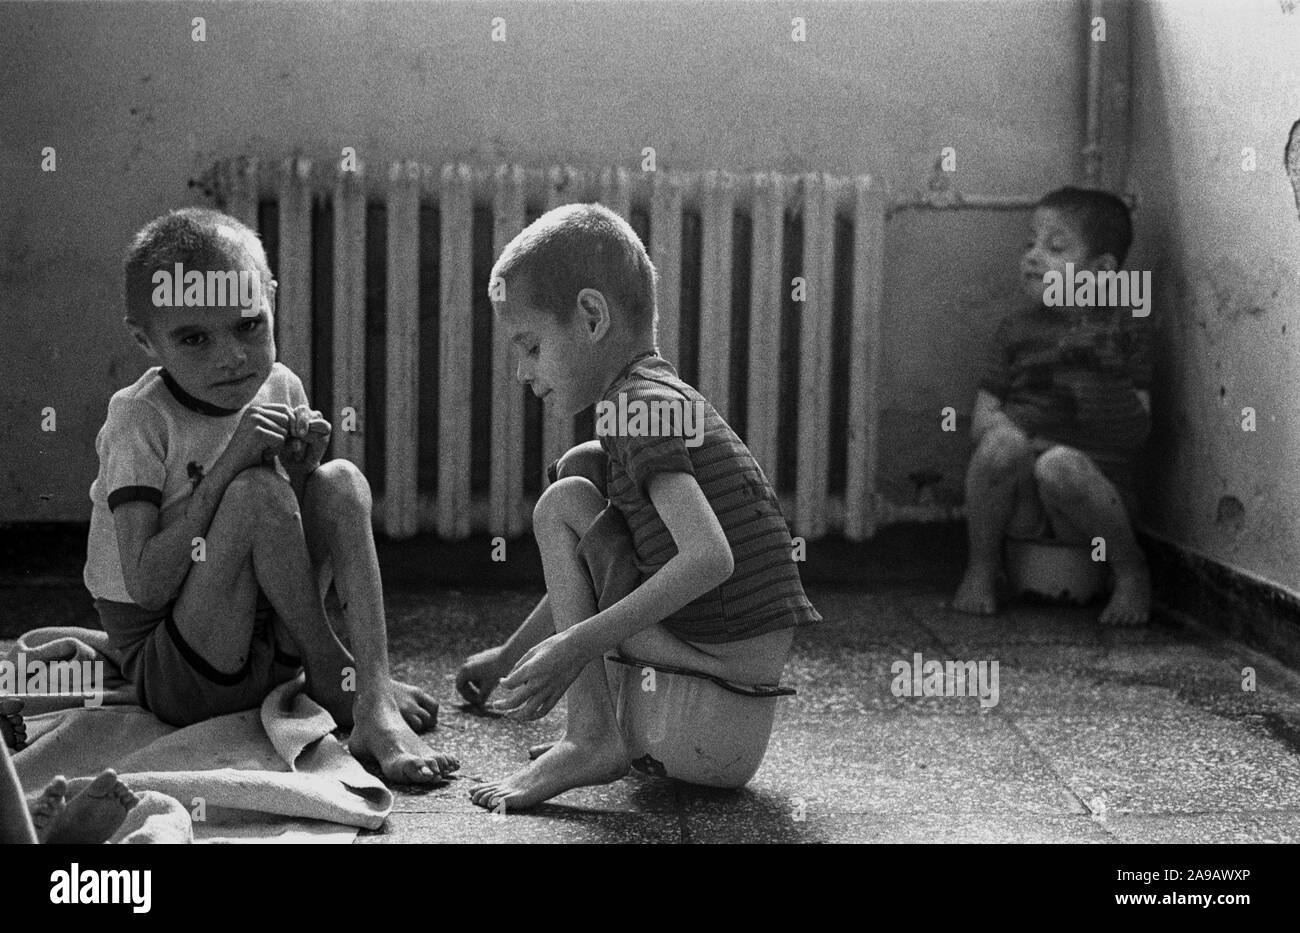 HOSPITAL FOR HANDICAPPED CHILDREN, SHKODRA, ALBANIA, SEP' 91 Stock Photo